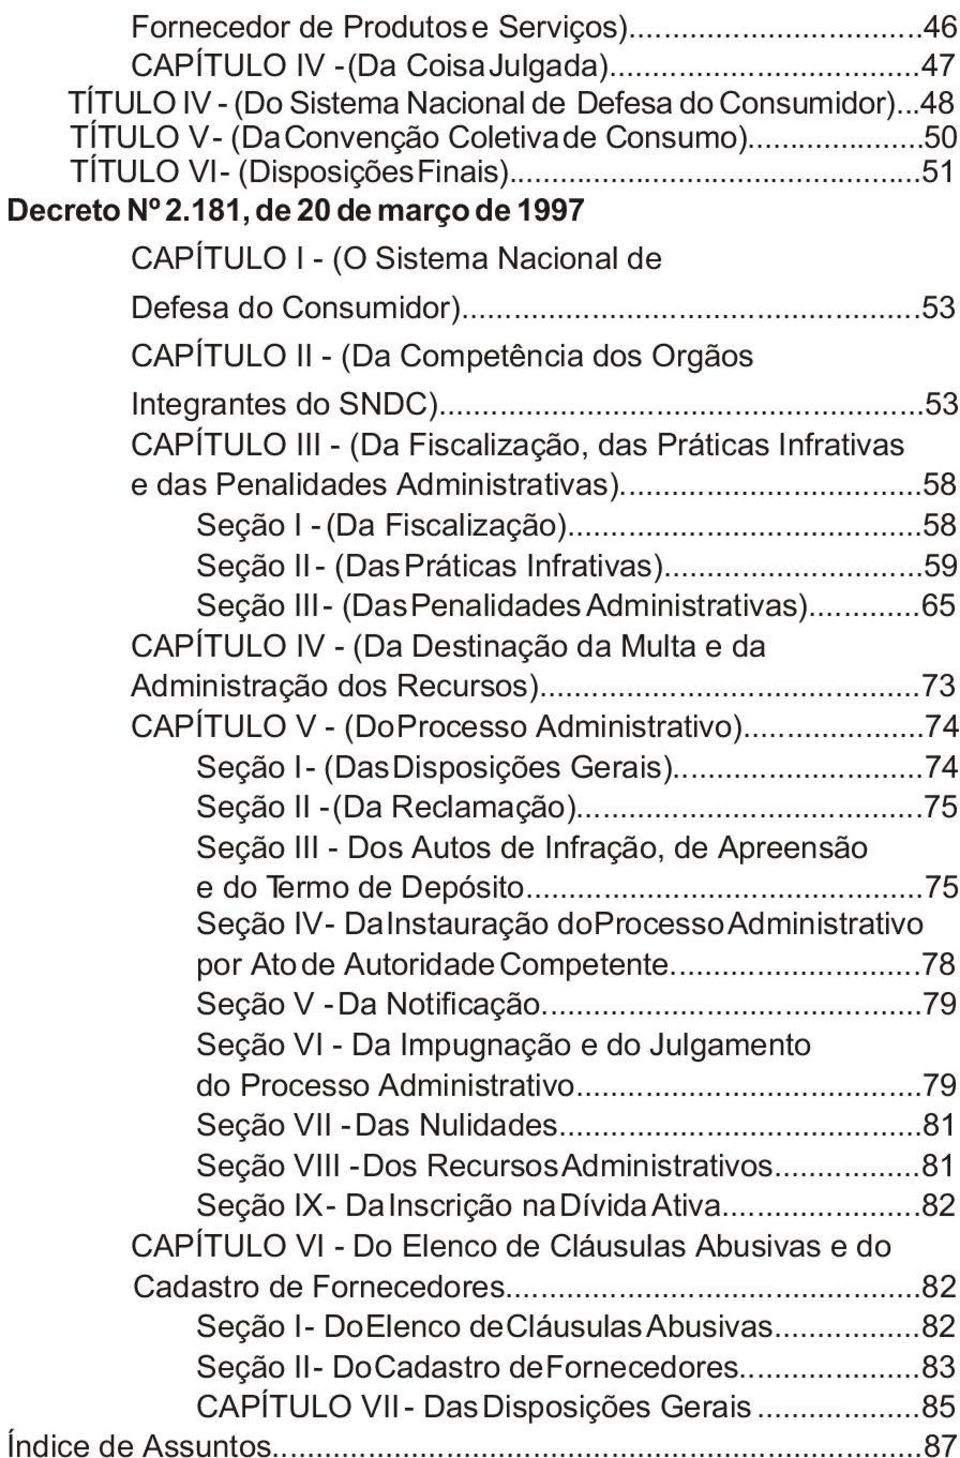 ..53 CAPÍTULO II - (Da Competência dos Orgãos Integrantes do SNDC)...53 CAPÍTULO III - (Da Fiscalização, das Práticas Infrativas e das Penalidades Administrativas)...58 Seção I - (Da Fiscalização).